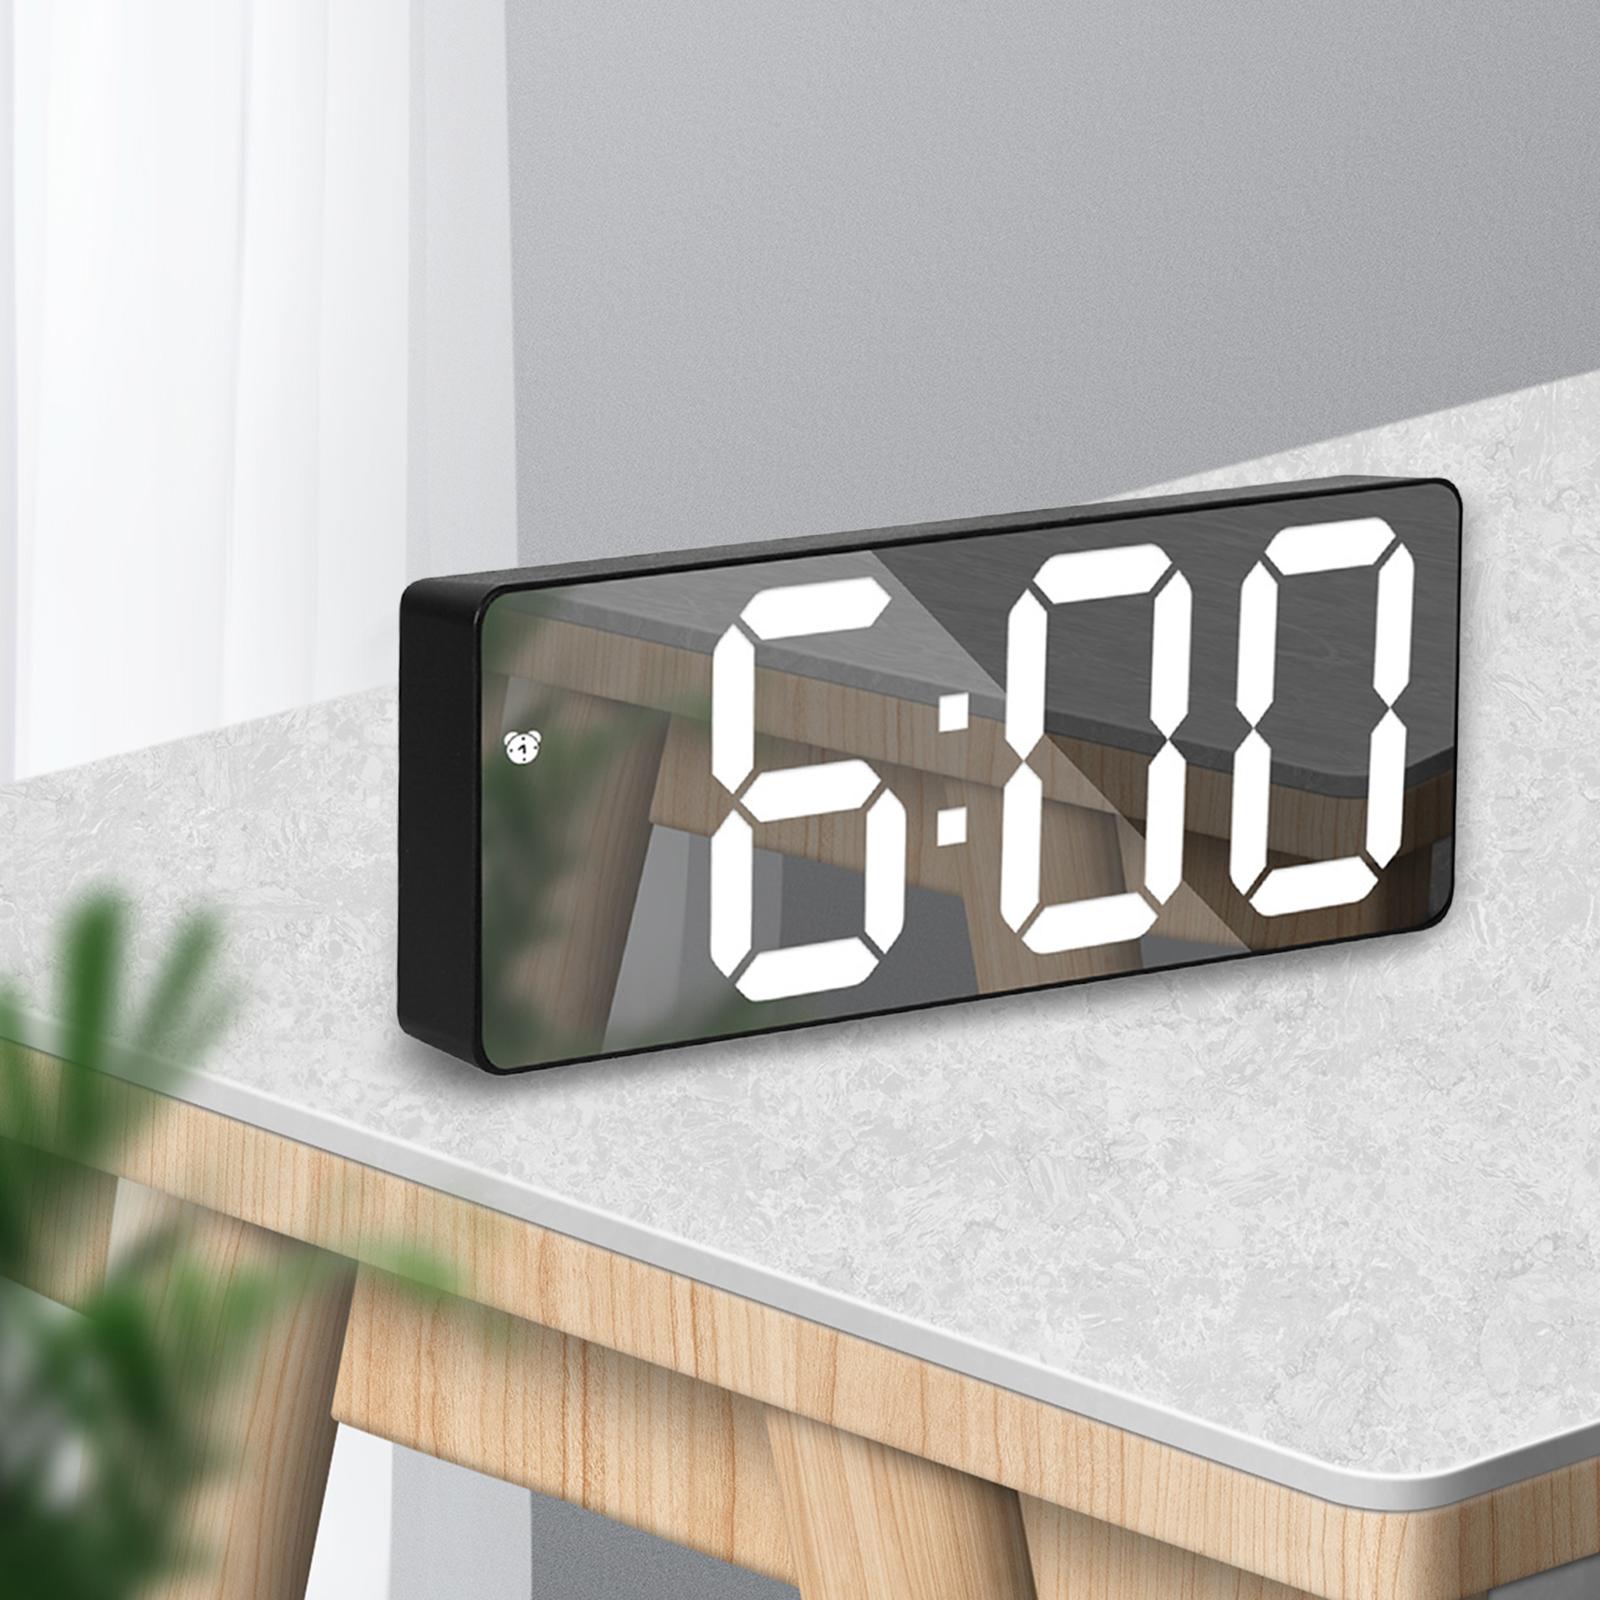 Alarm Clock Snooze Large Display Electronic Desktop Black mirror white